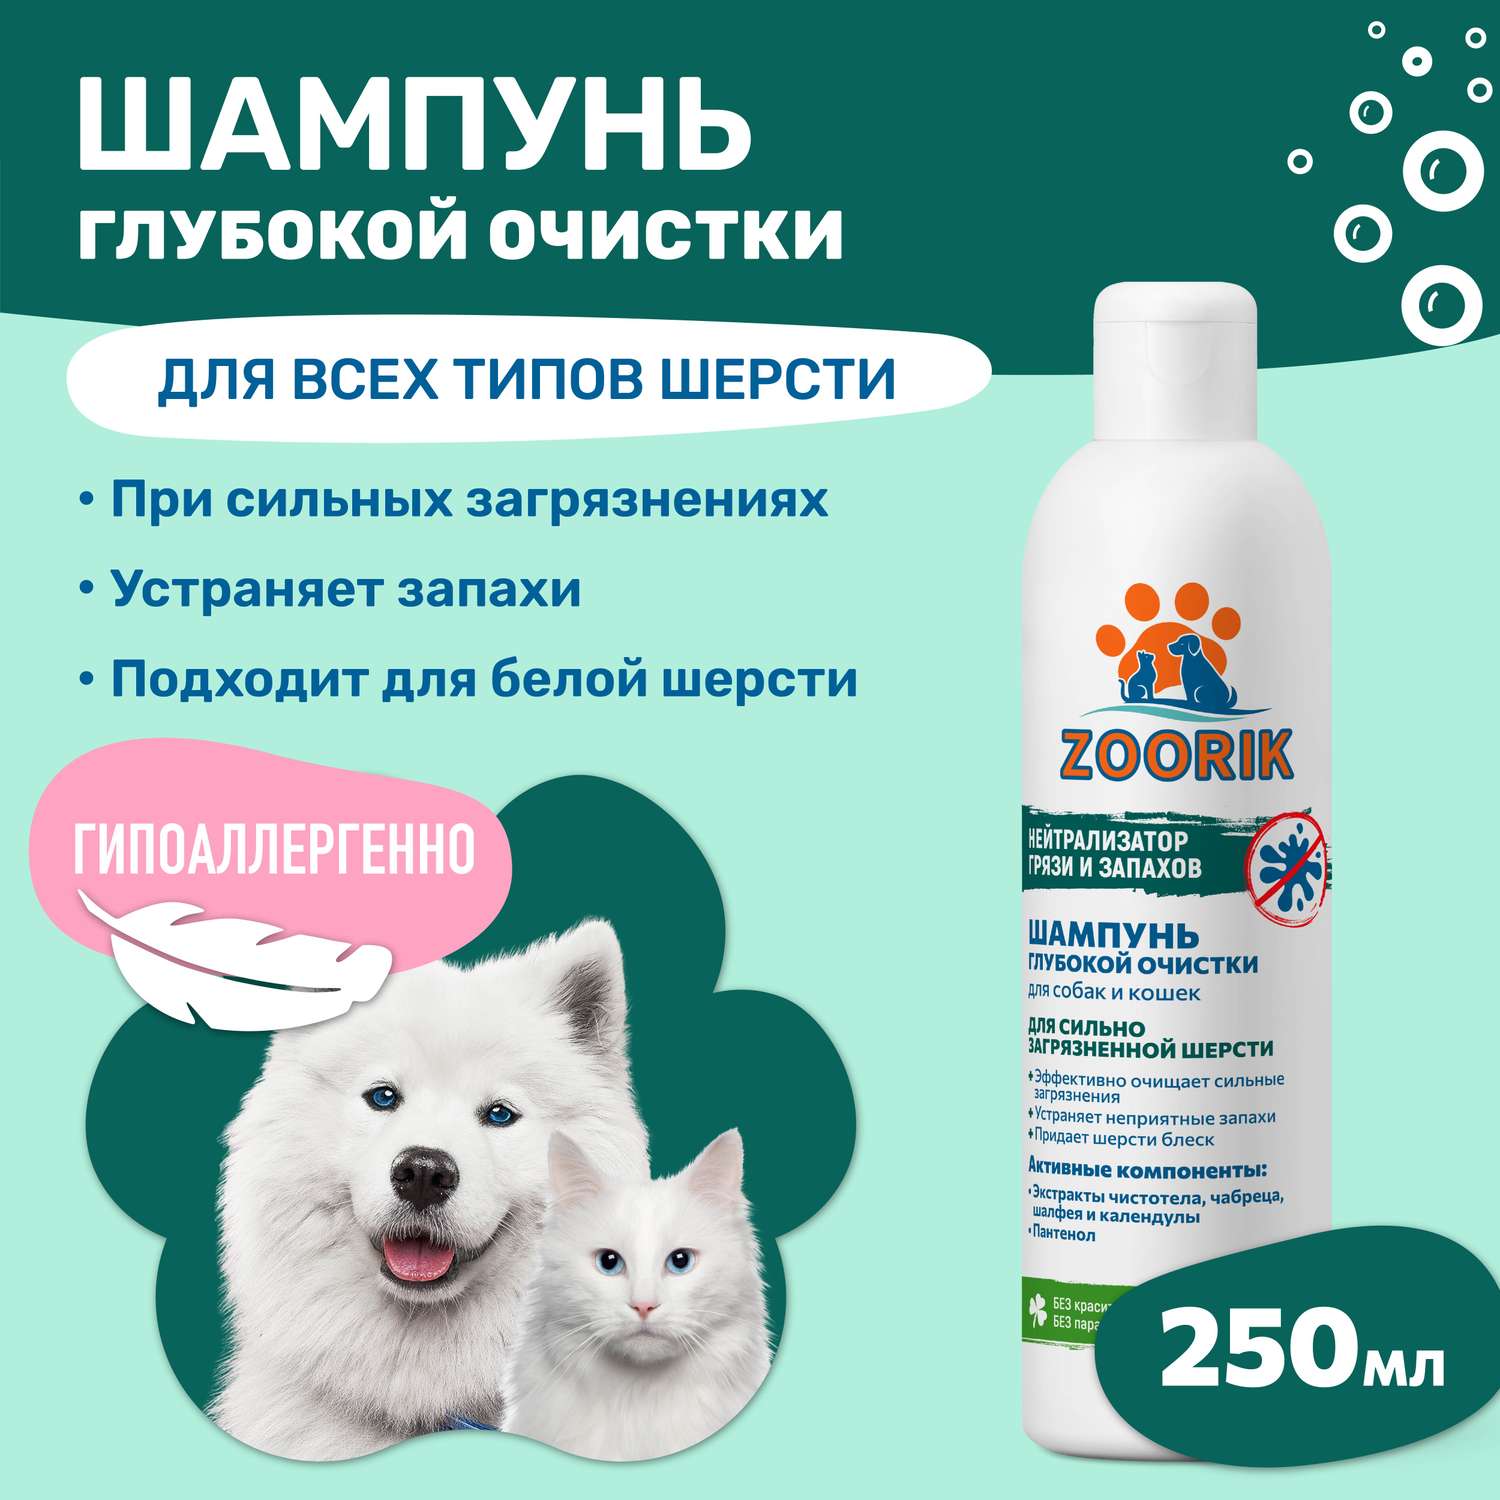 Шампунь ZOORIK для собак и кошек глубокой очистки 250 мл - фото 2